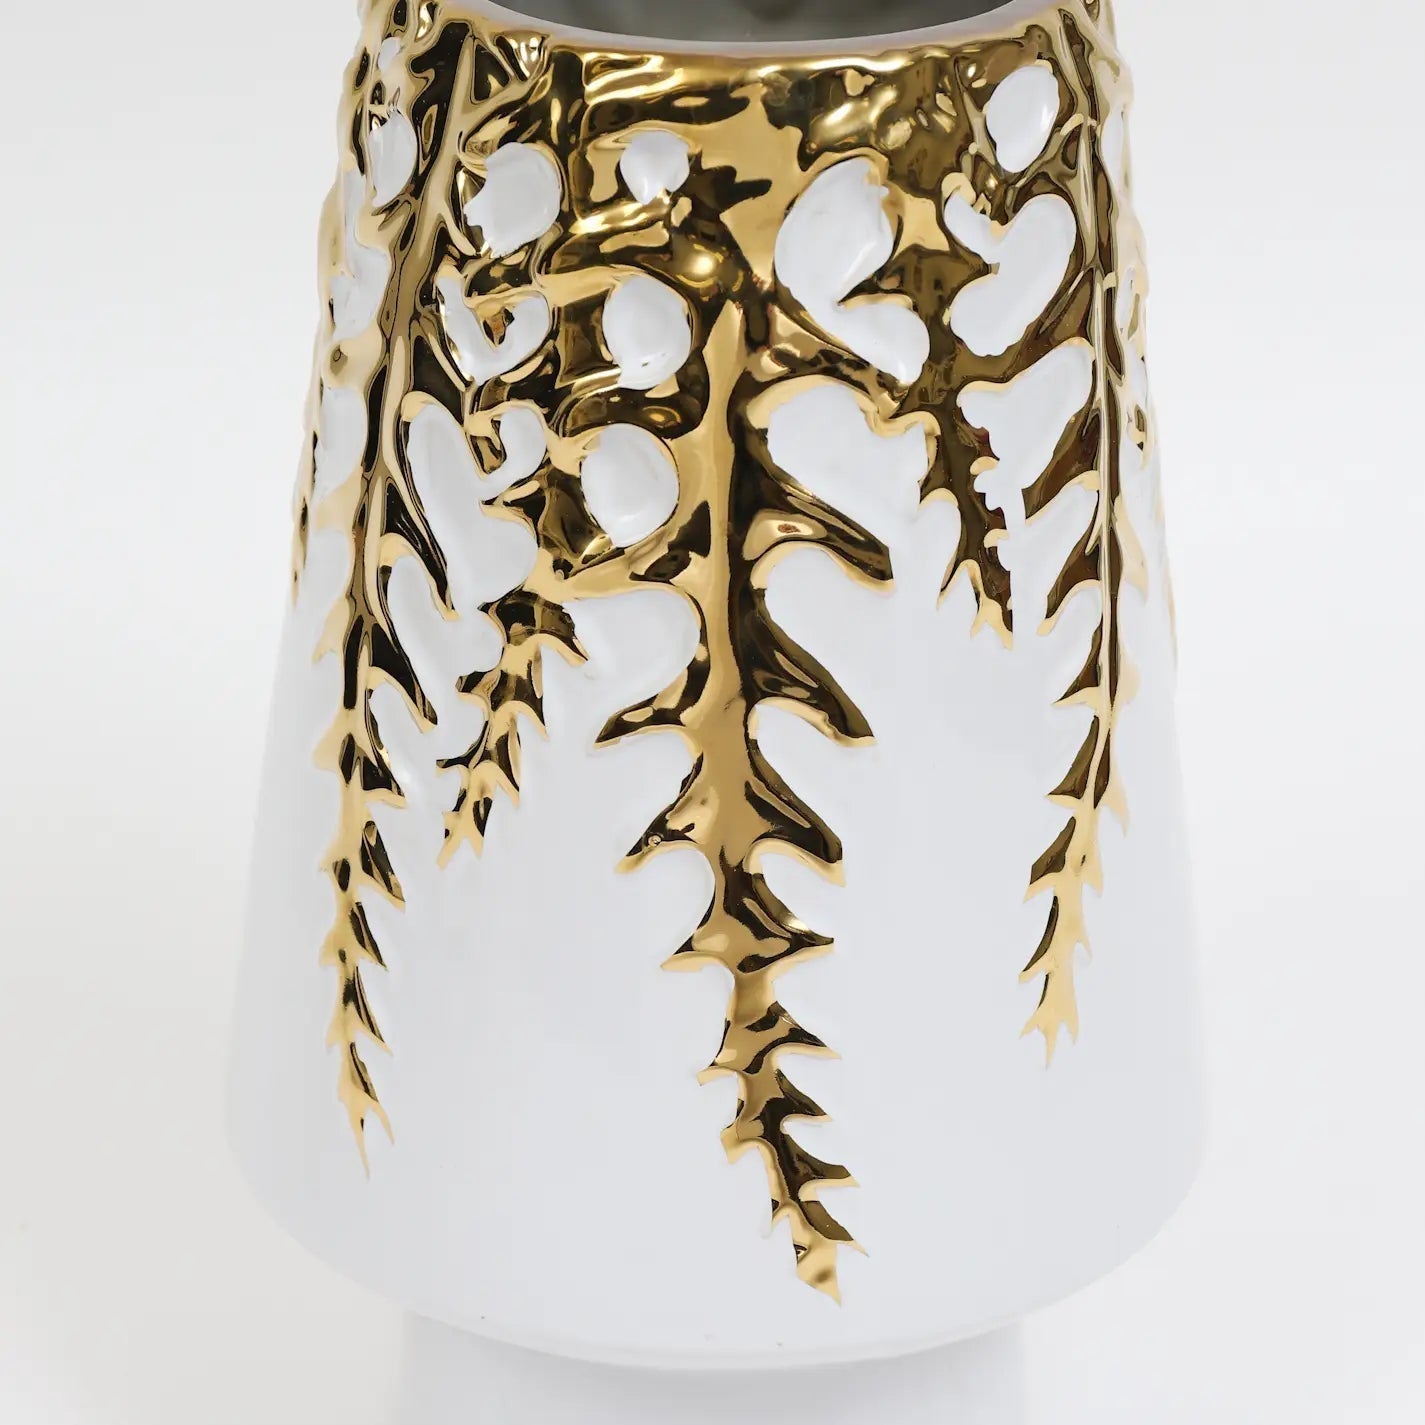 White Ceramic Vase Gold Design Vases High Class Touch - Home Decor 